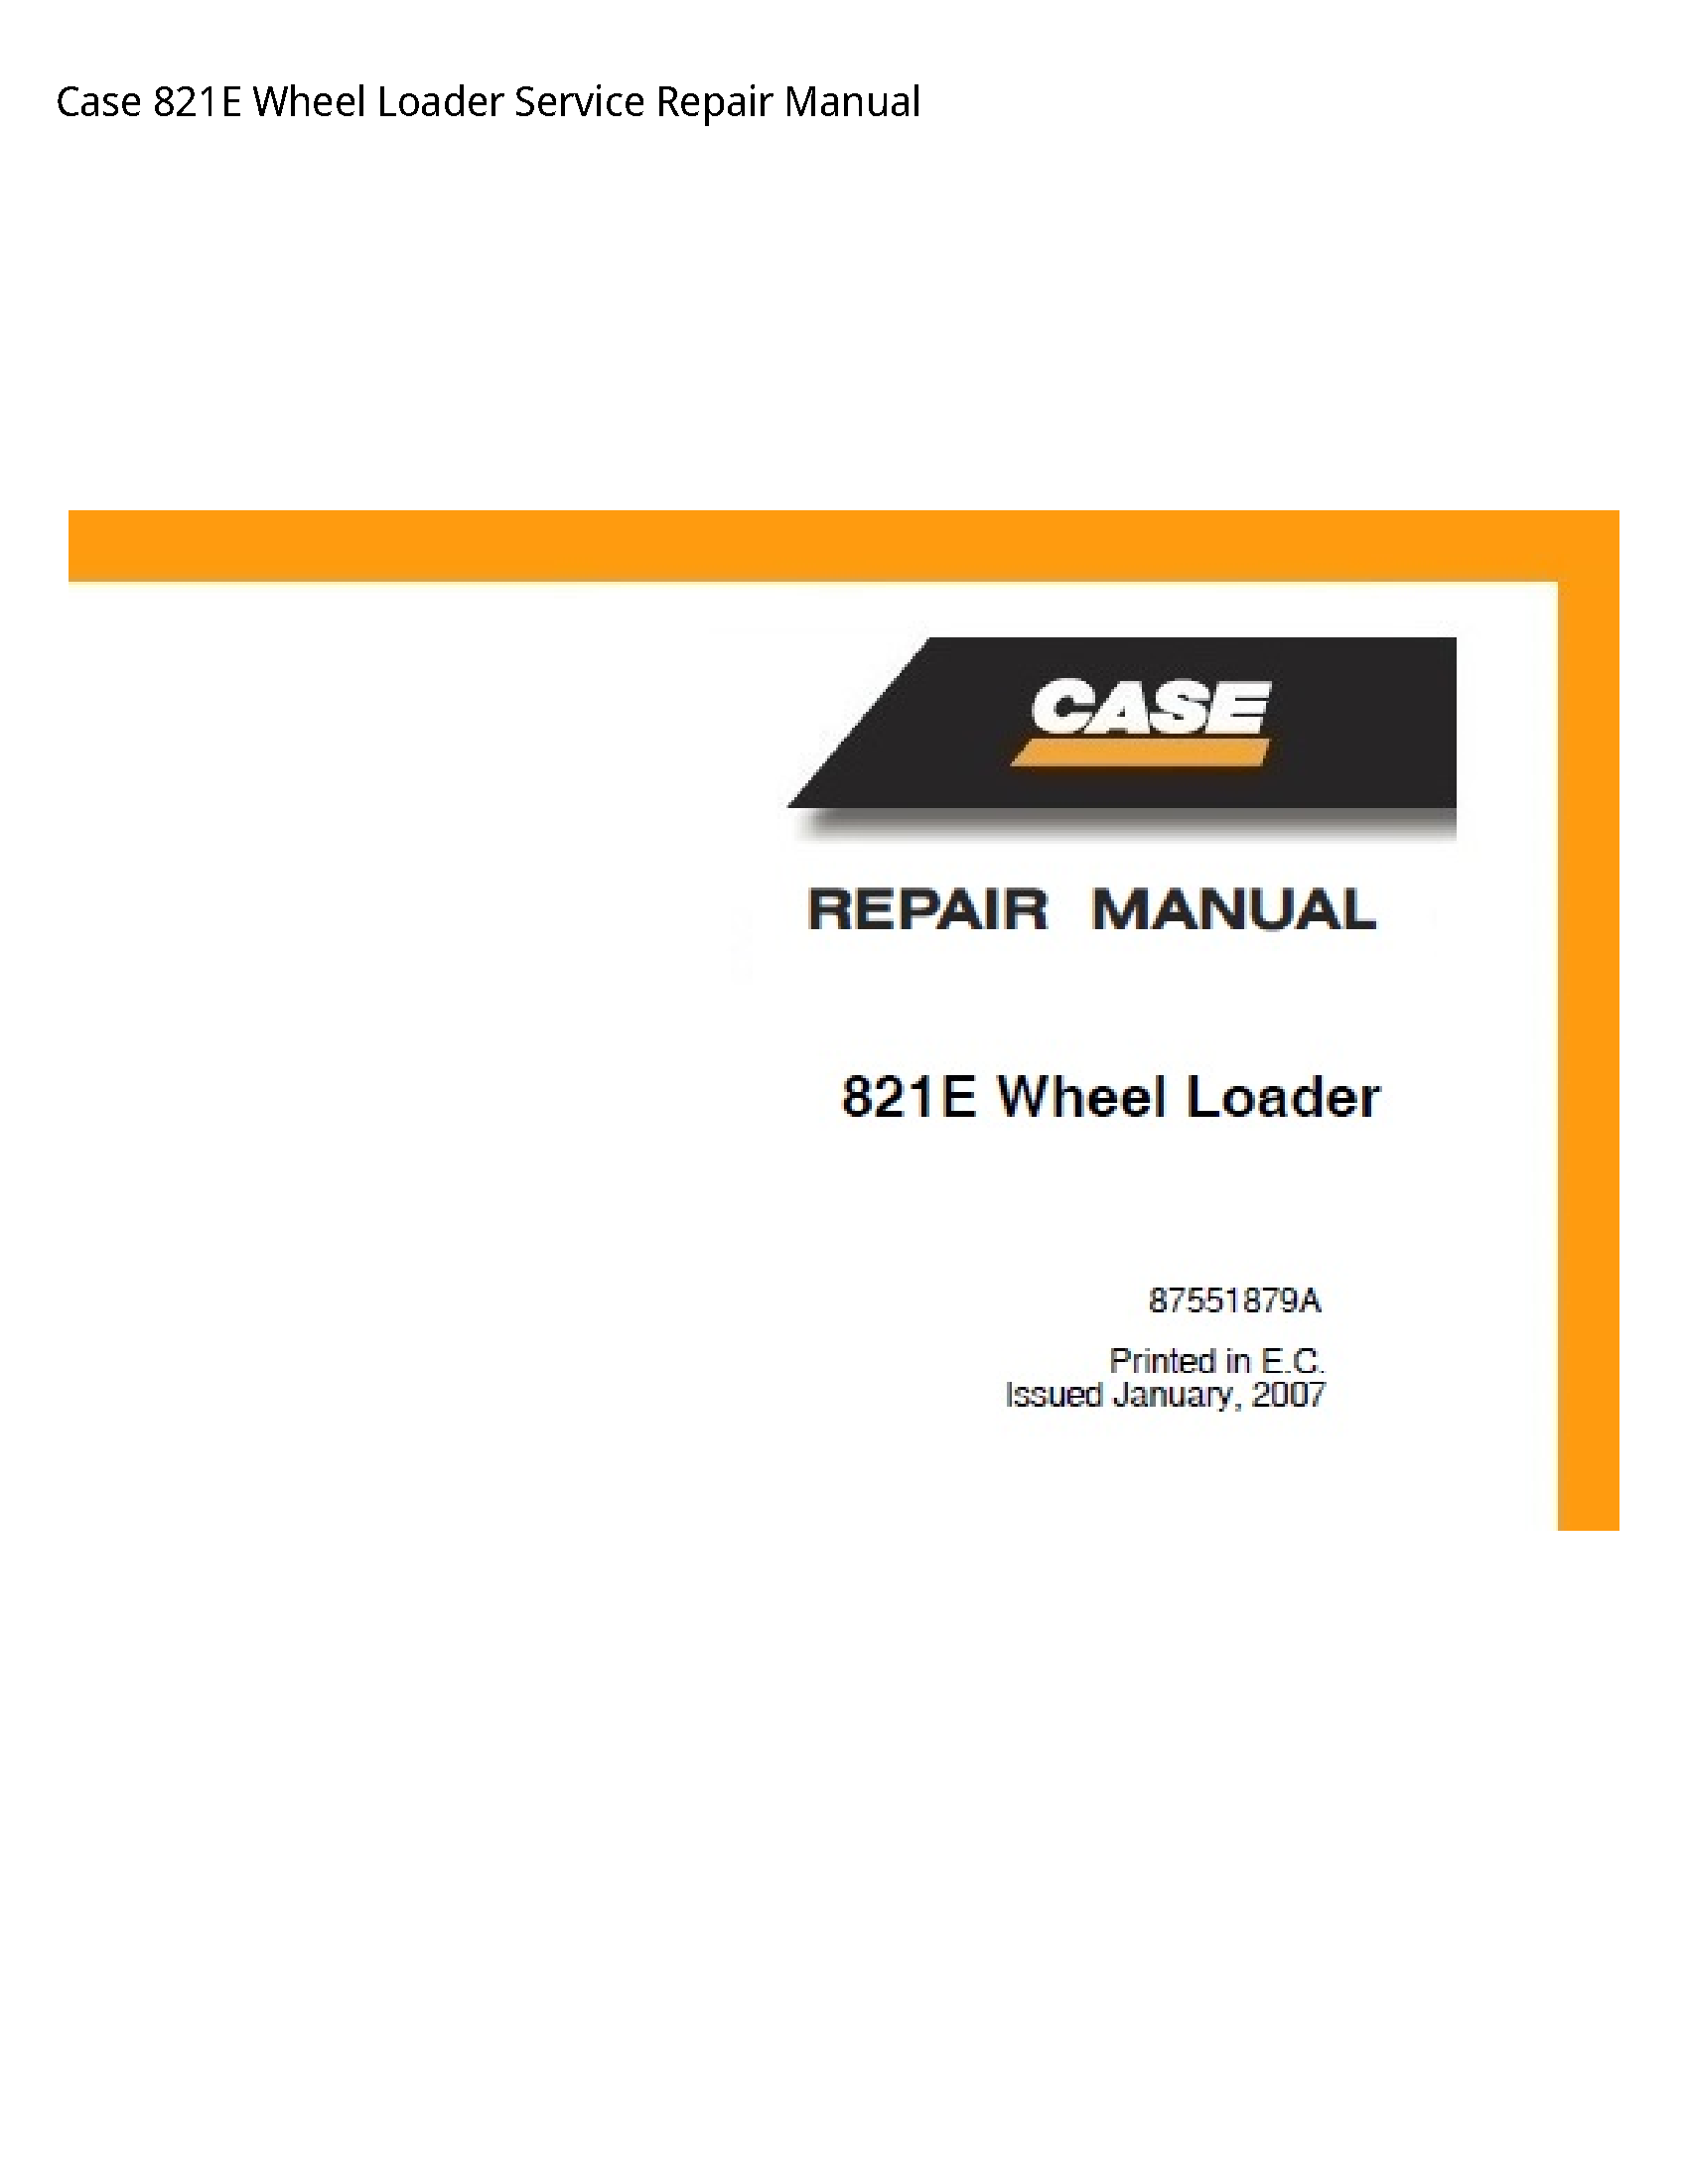 Case/Case IH 821E Wheel Loader manual